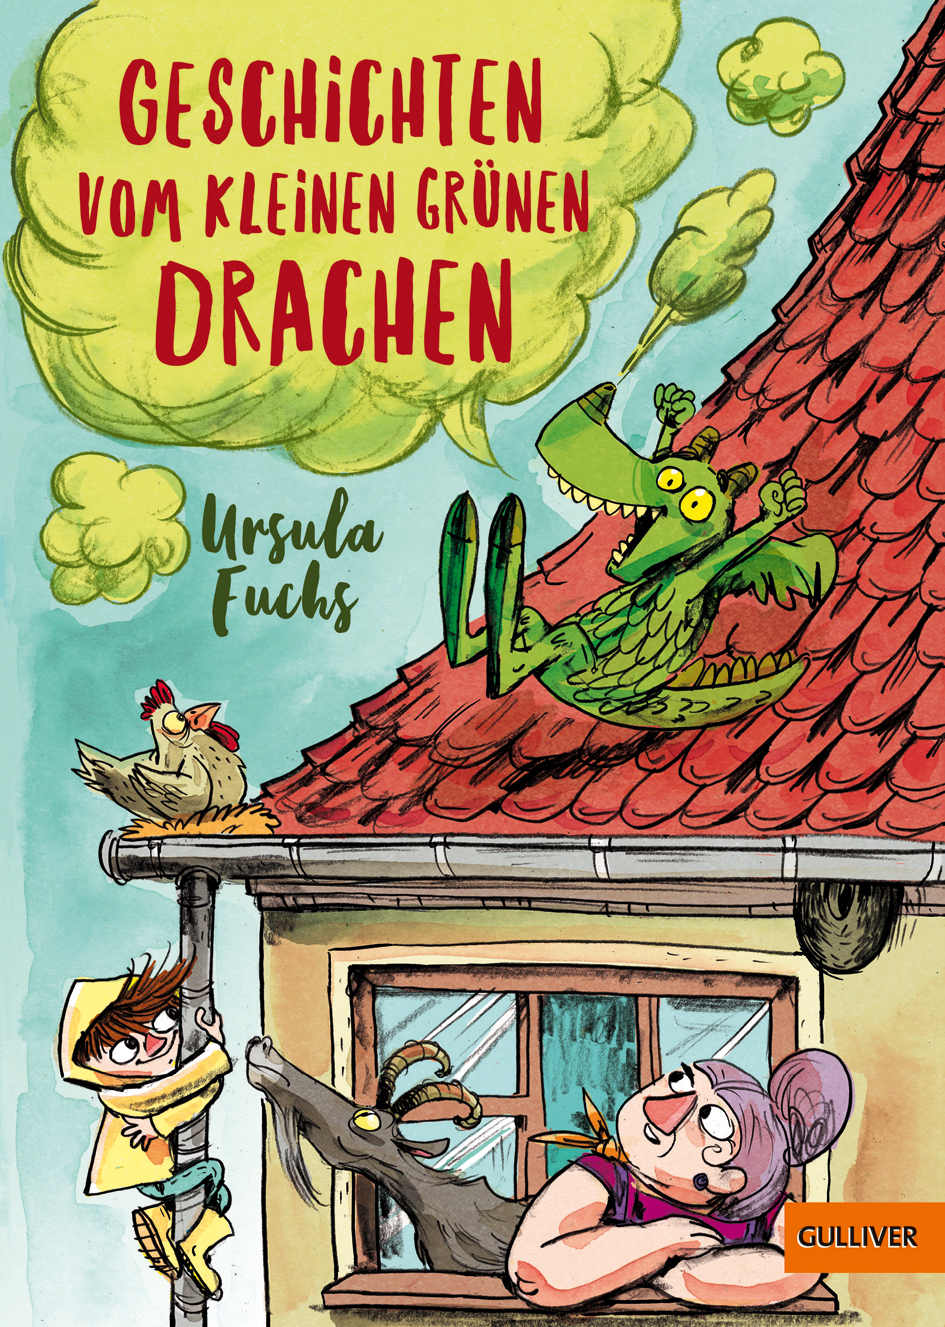 Buchcover "Geschichten vom kleinen grünen Drachen", Gulliver